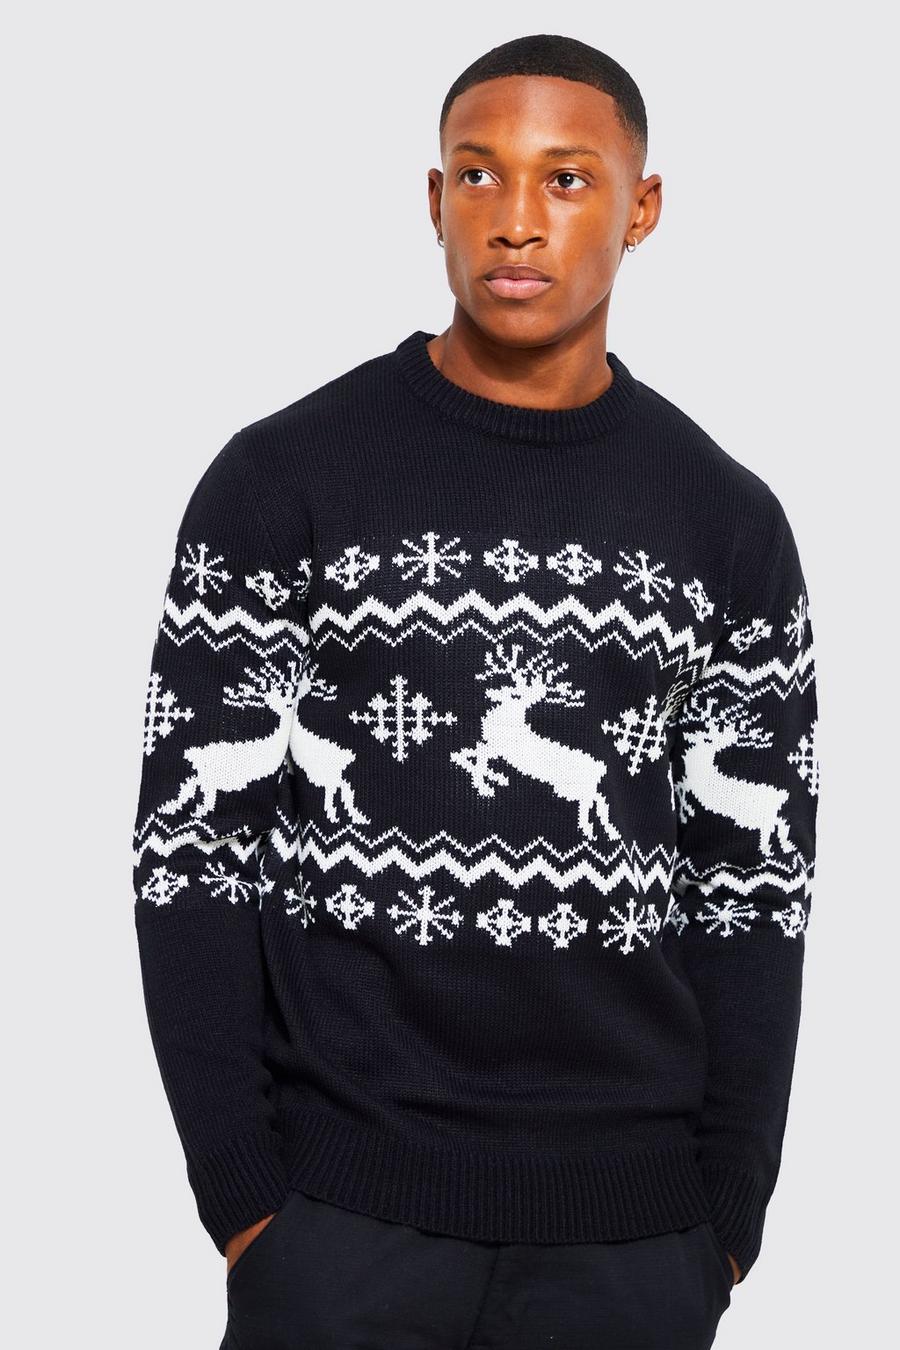 Maglione natalizio con renne e motivi Fairisle, Black nero